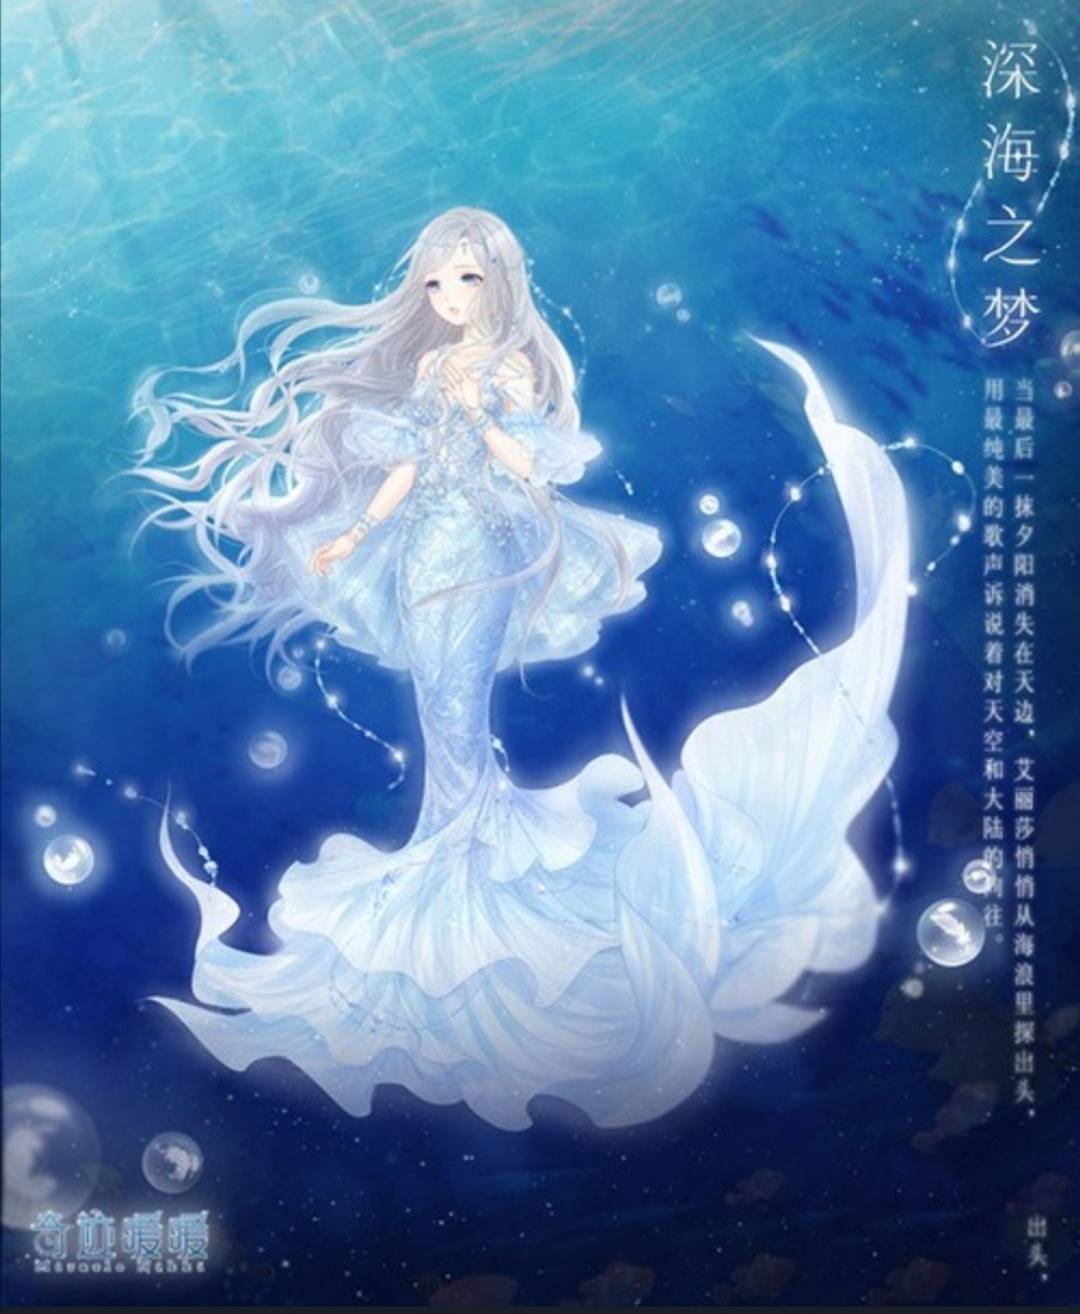 原创奇迹暖暖的海底世界超美,鲛珠堪称女皇,人鱼是永远的神